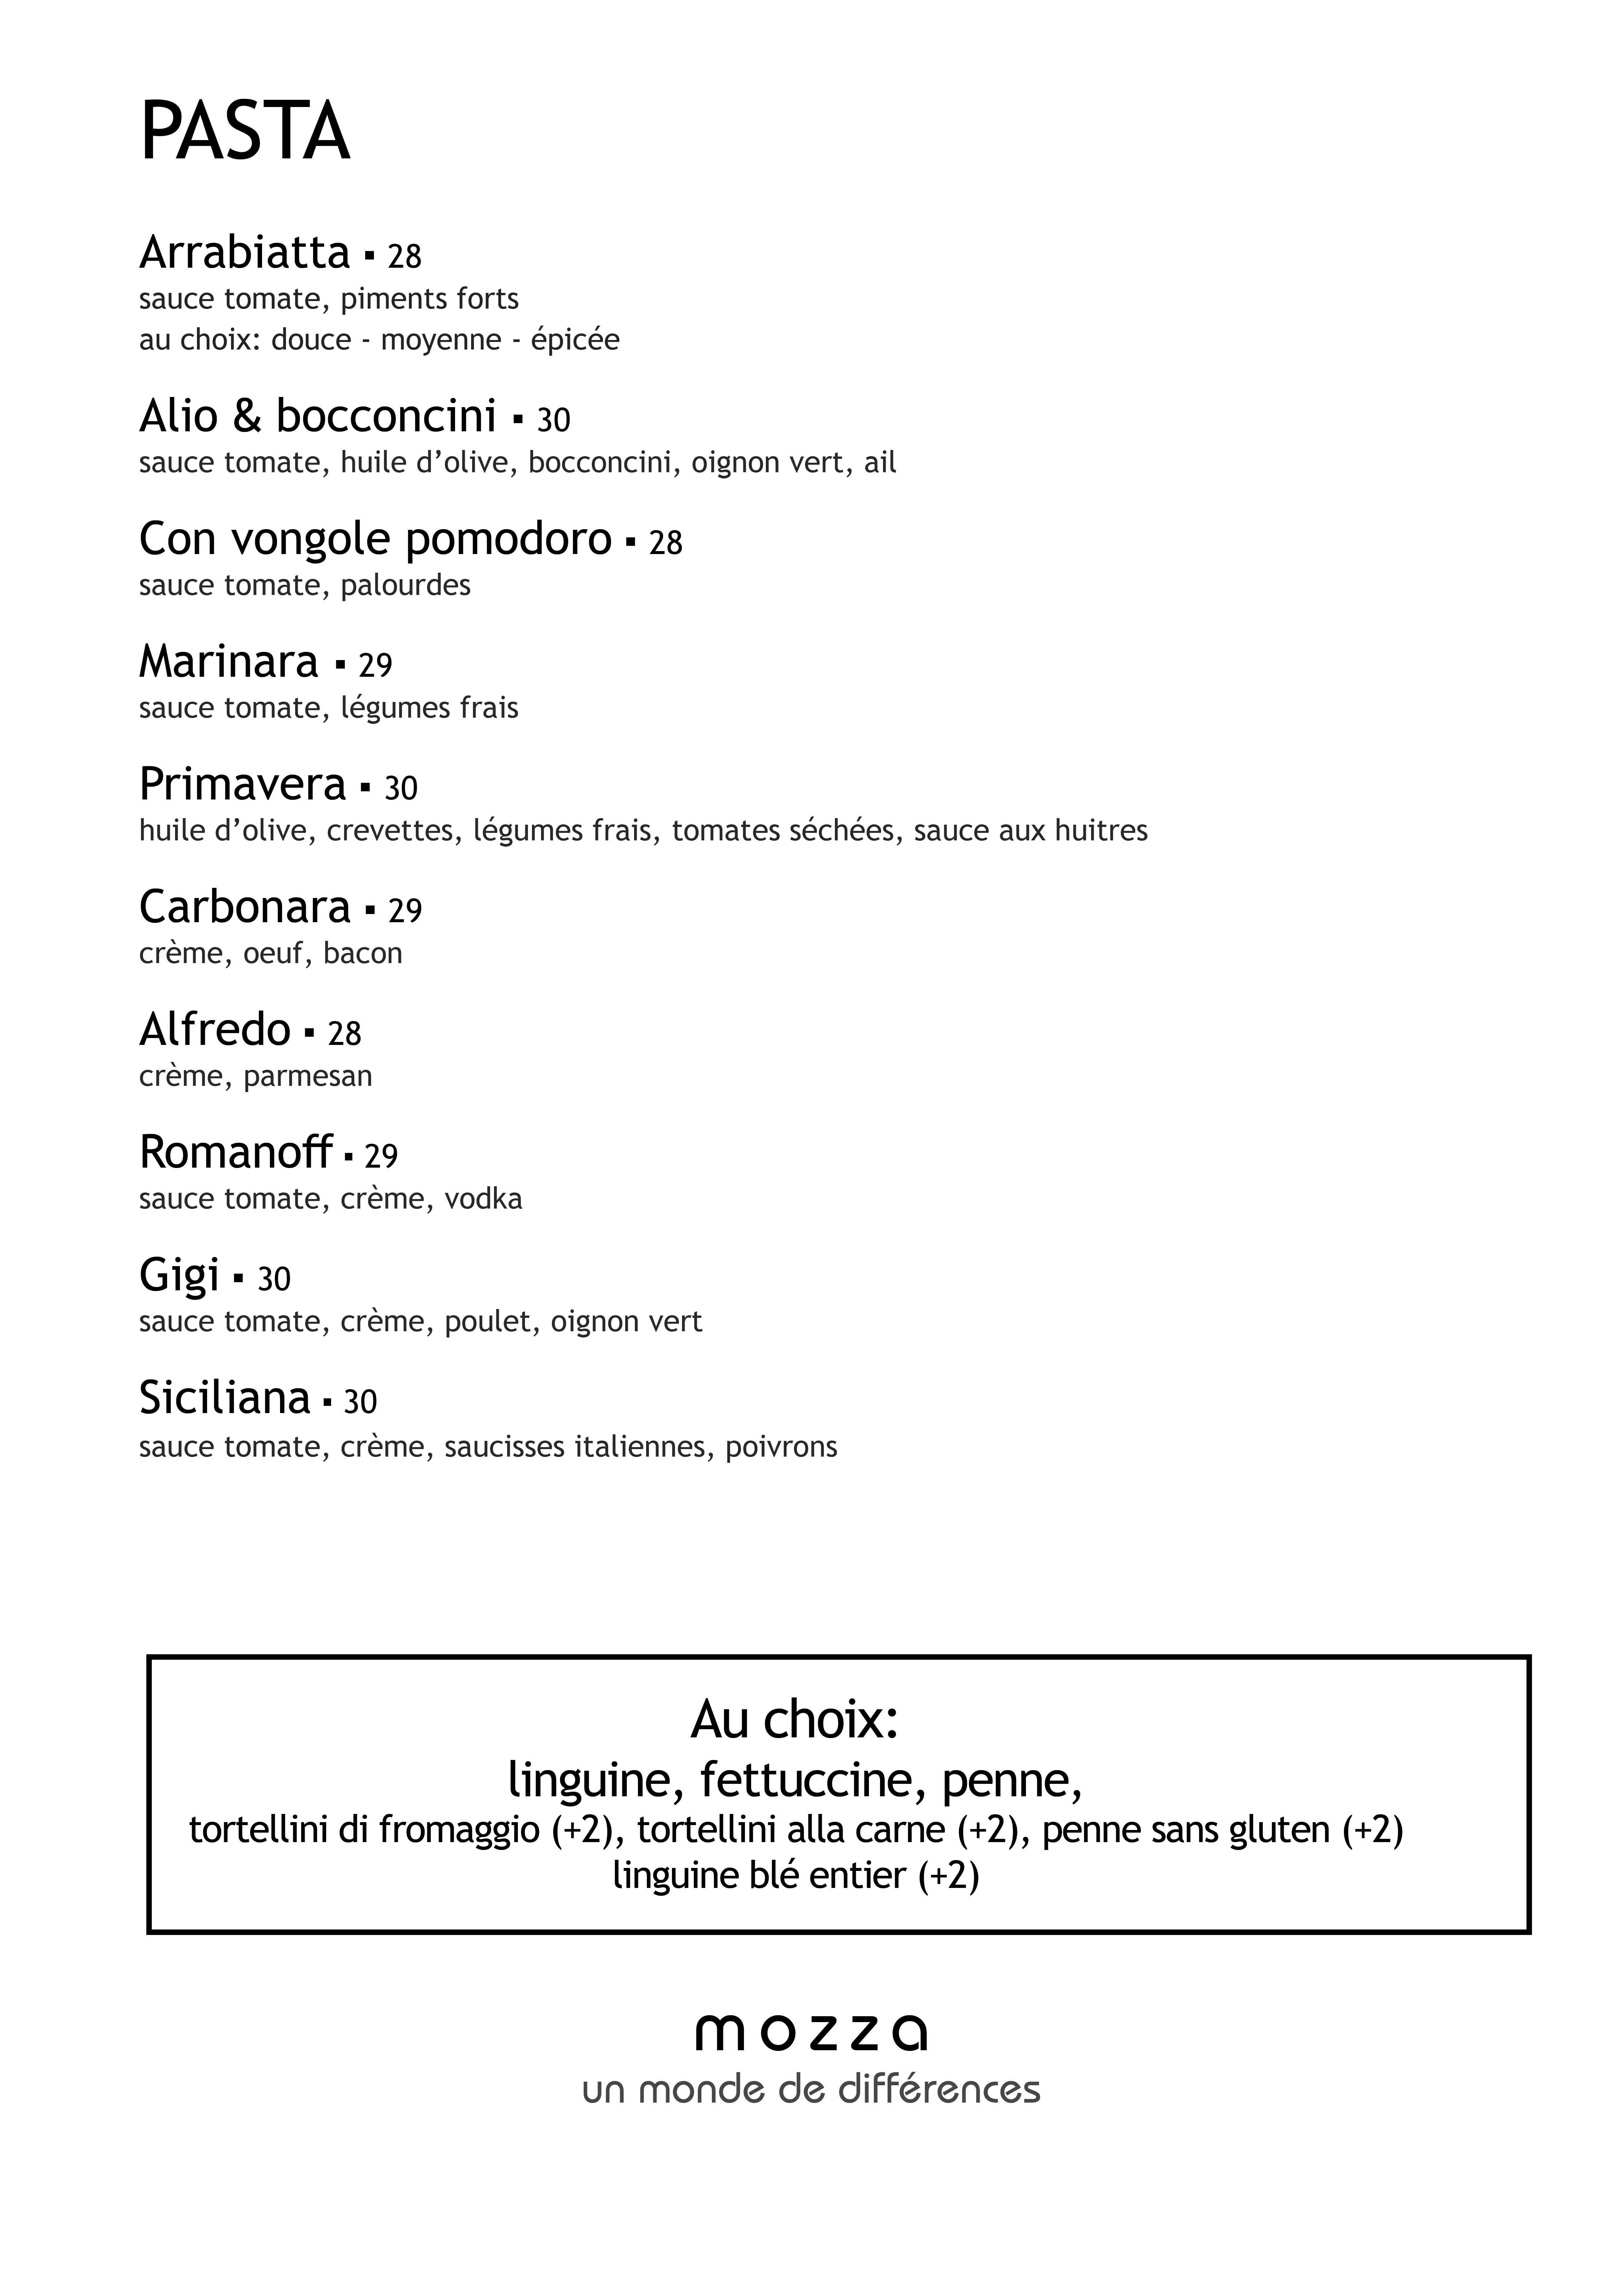 menu_3